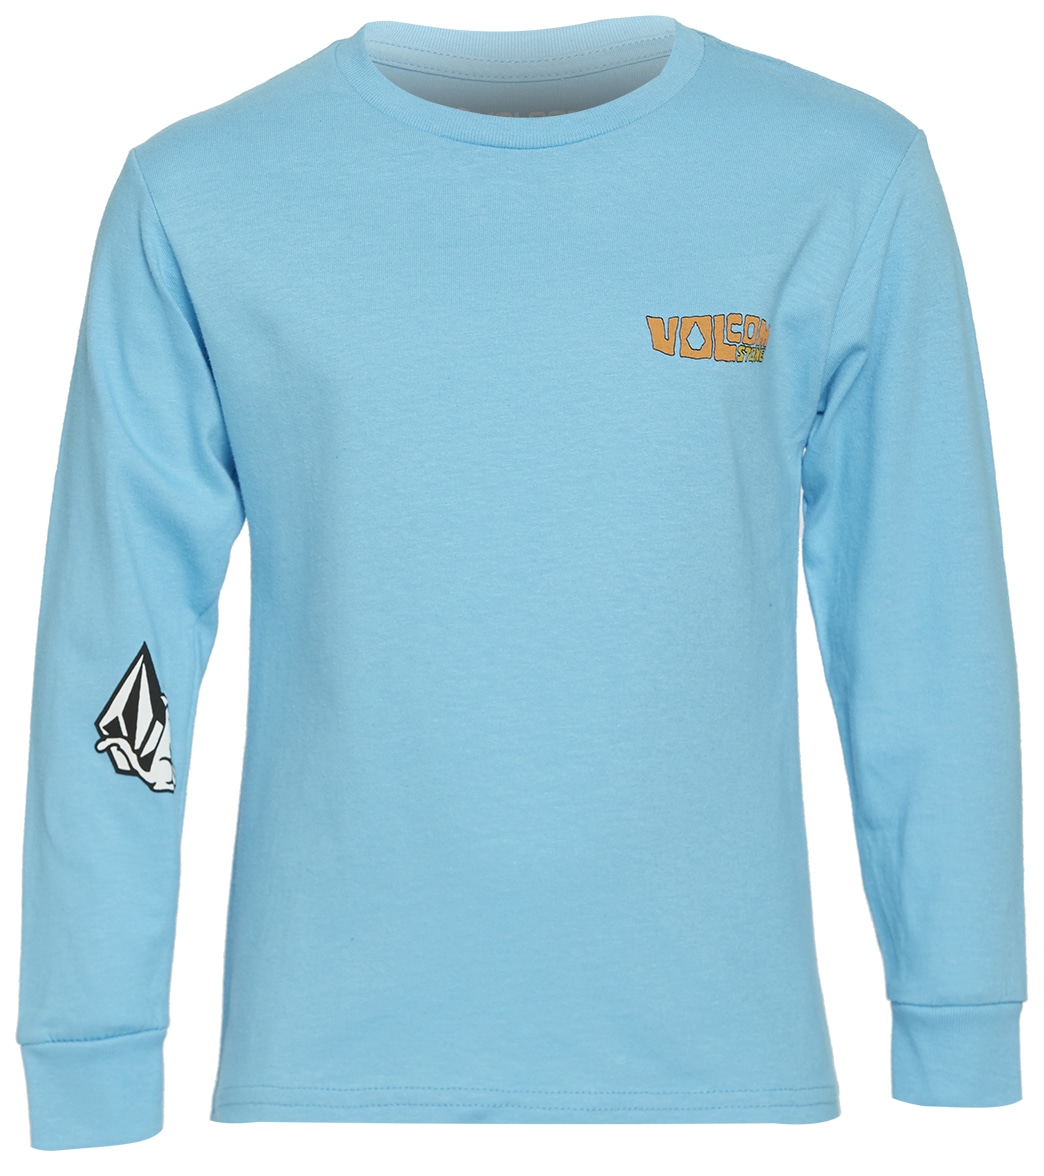 Volcom Boys' Catback Long Sleeve Shirt - Aqua 6 Cotton - Swimoutlet.com